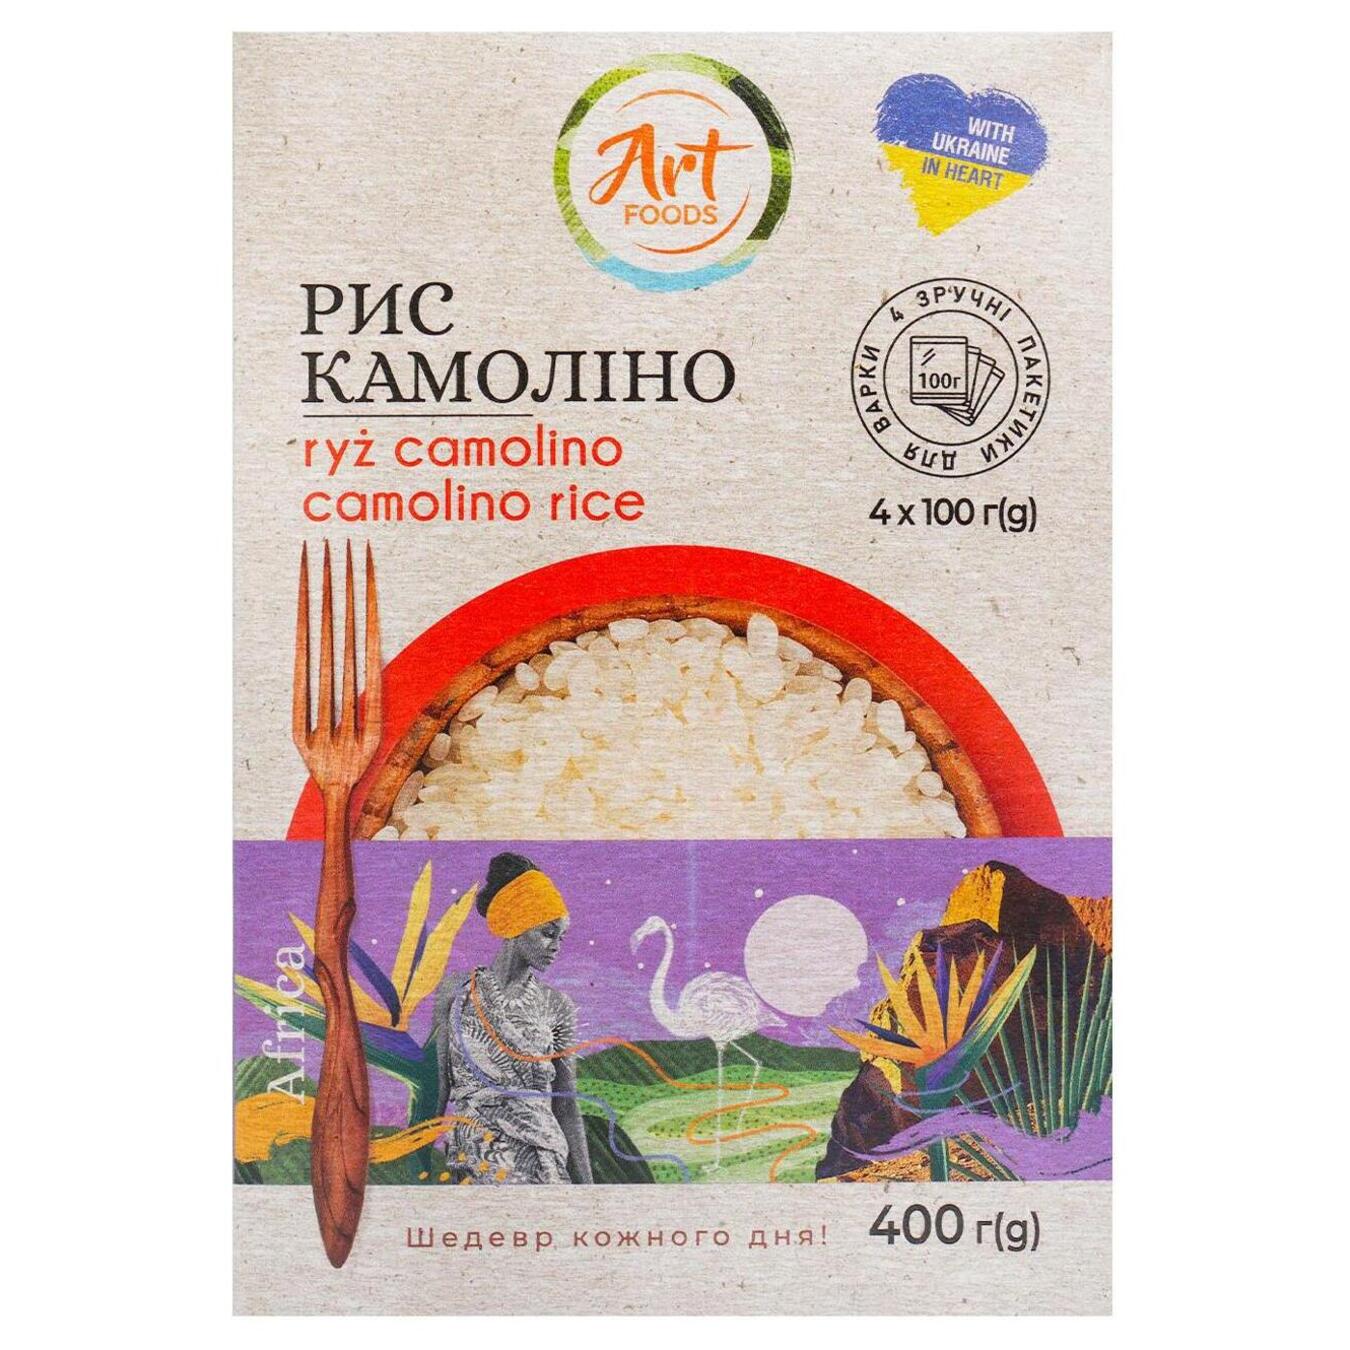 Camolino rice Art Foods 4*100g